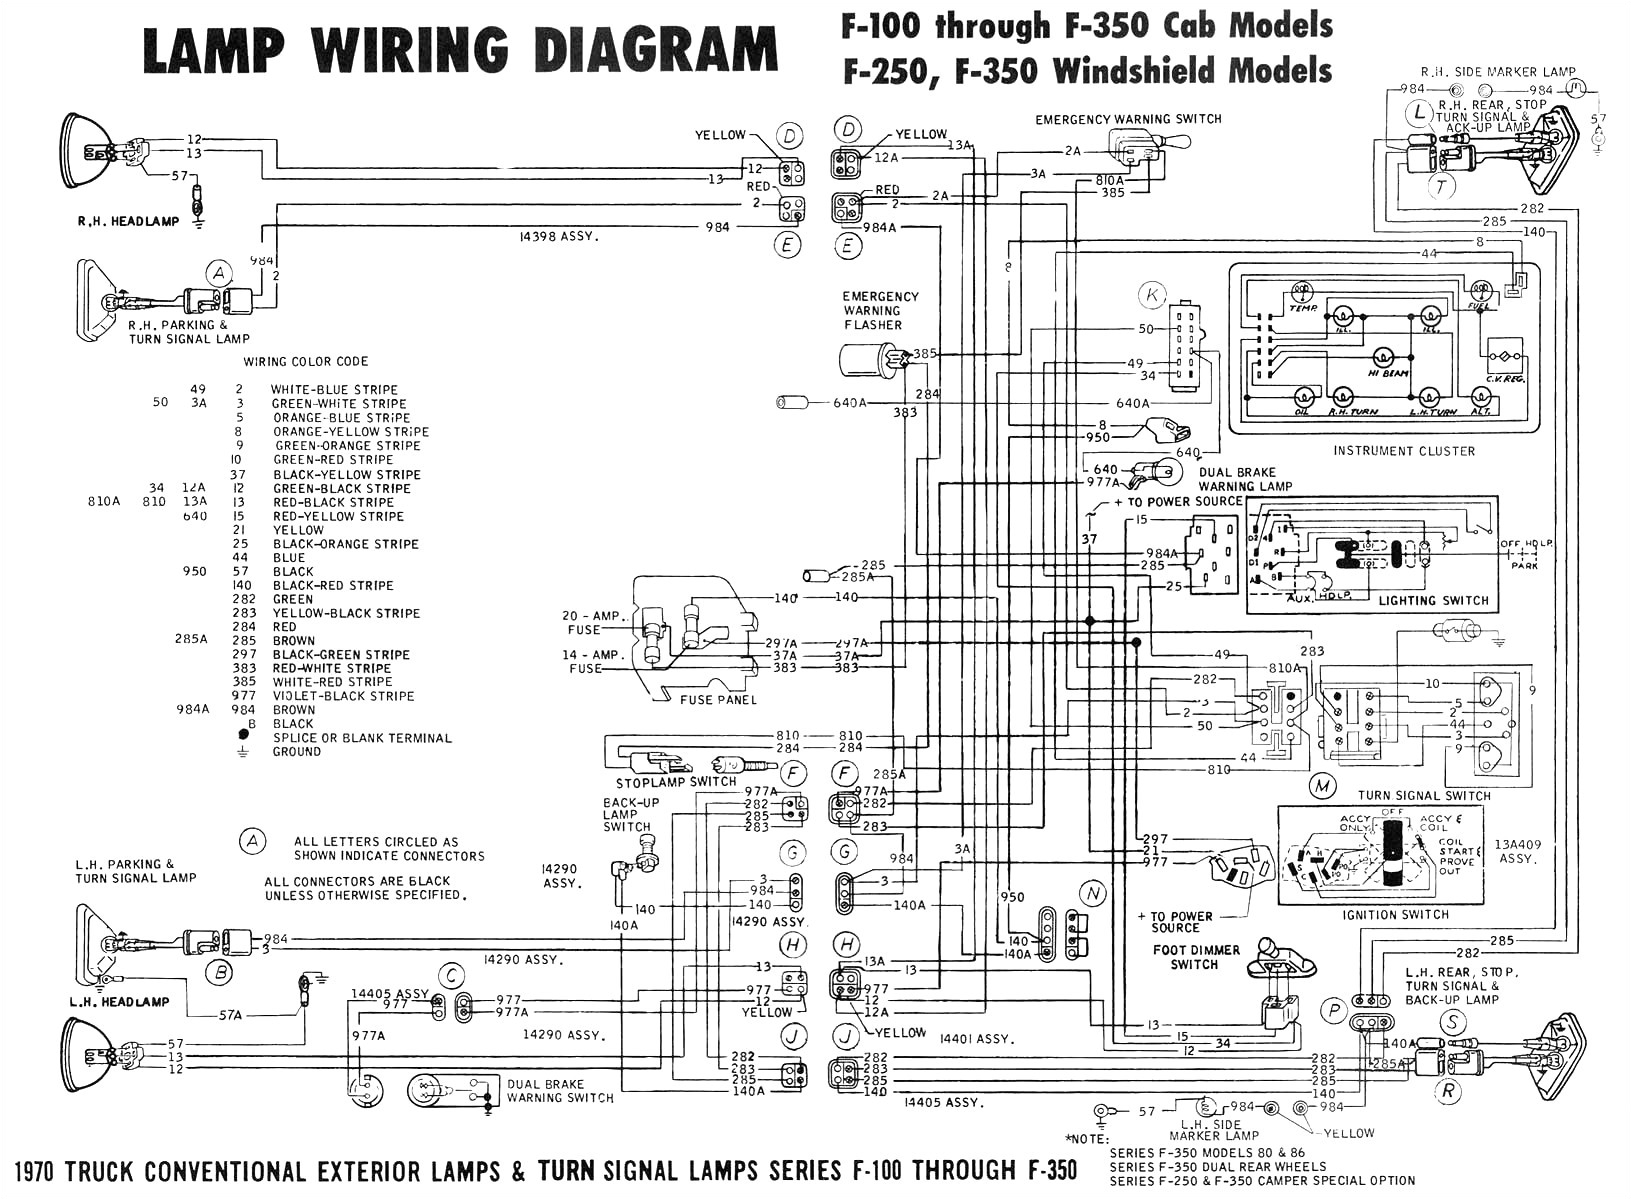 2wire 220 schematic diagram 1975 wiring diagram files 2wire schematic diagram